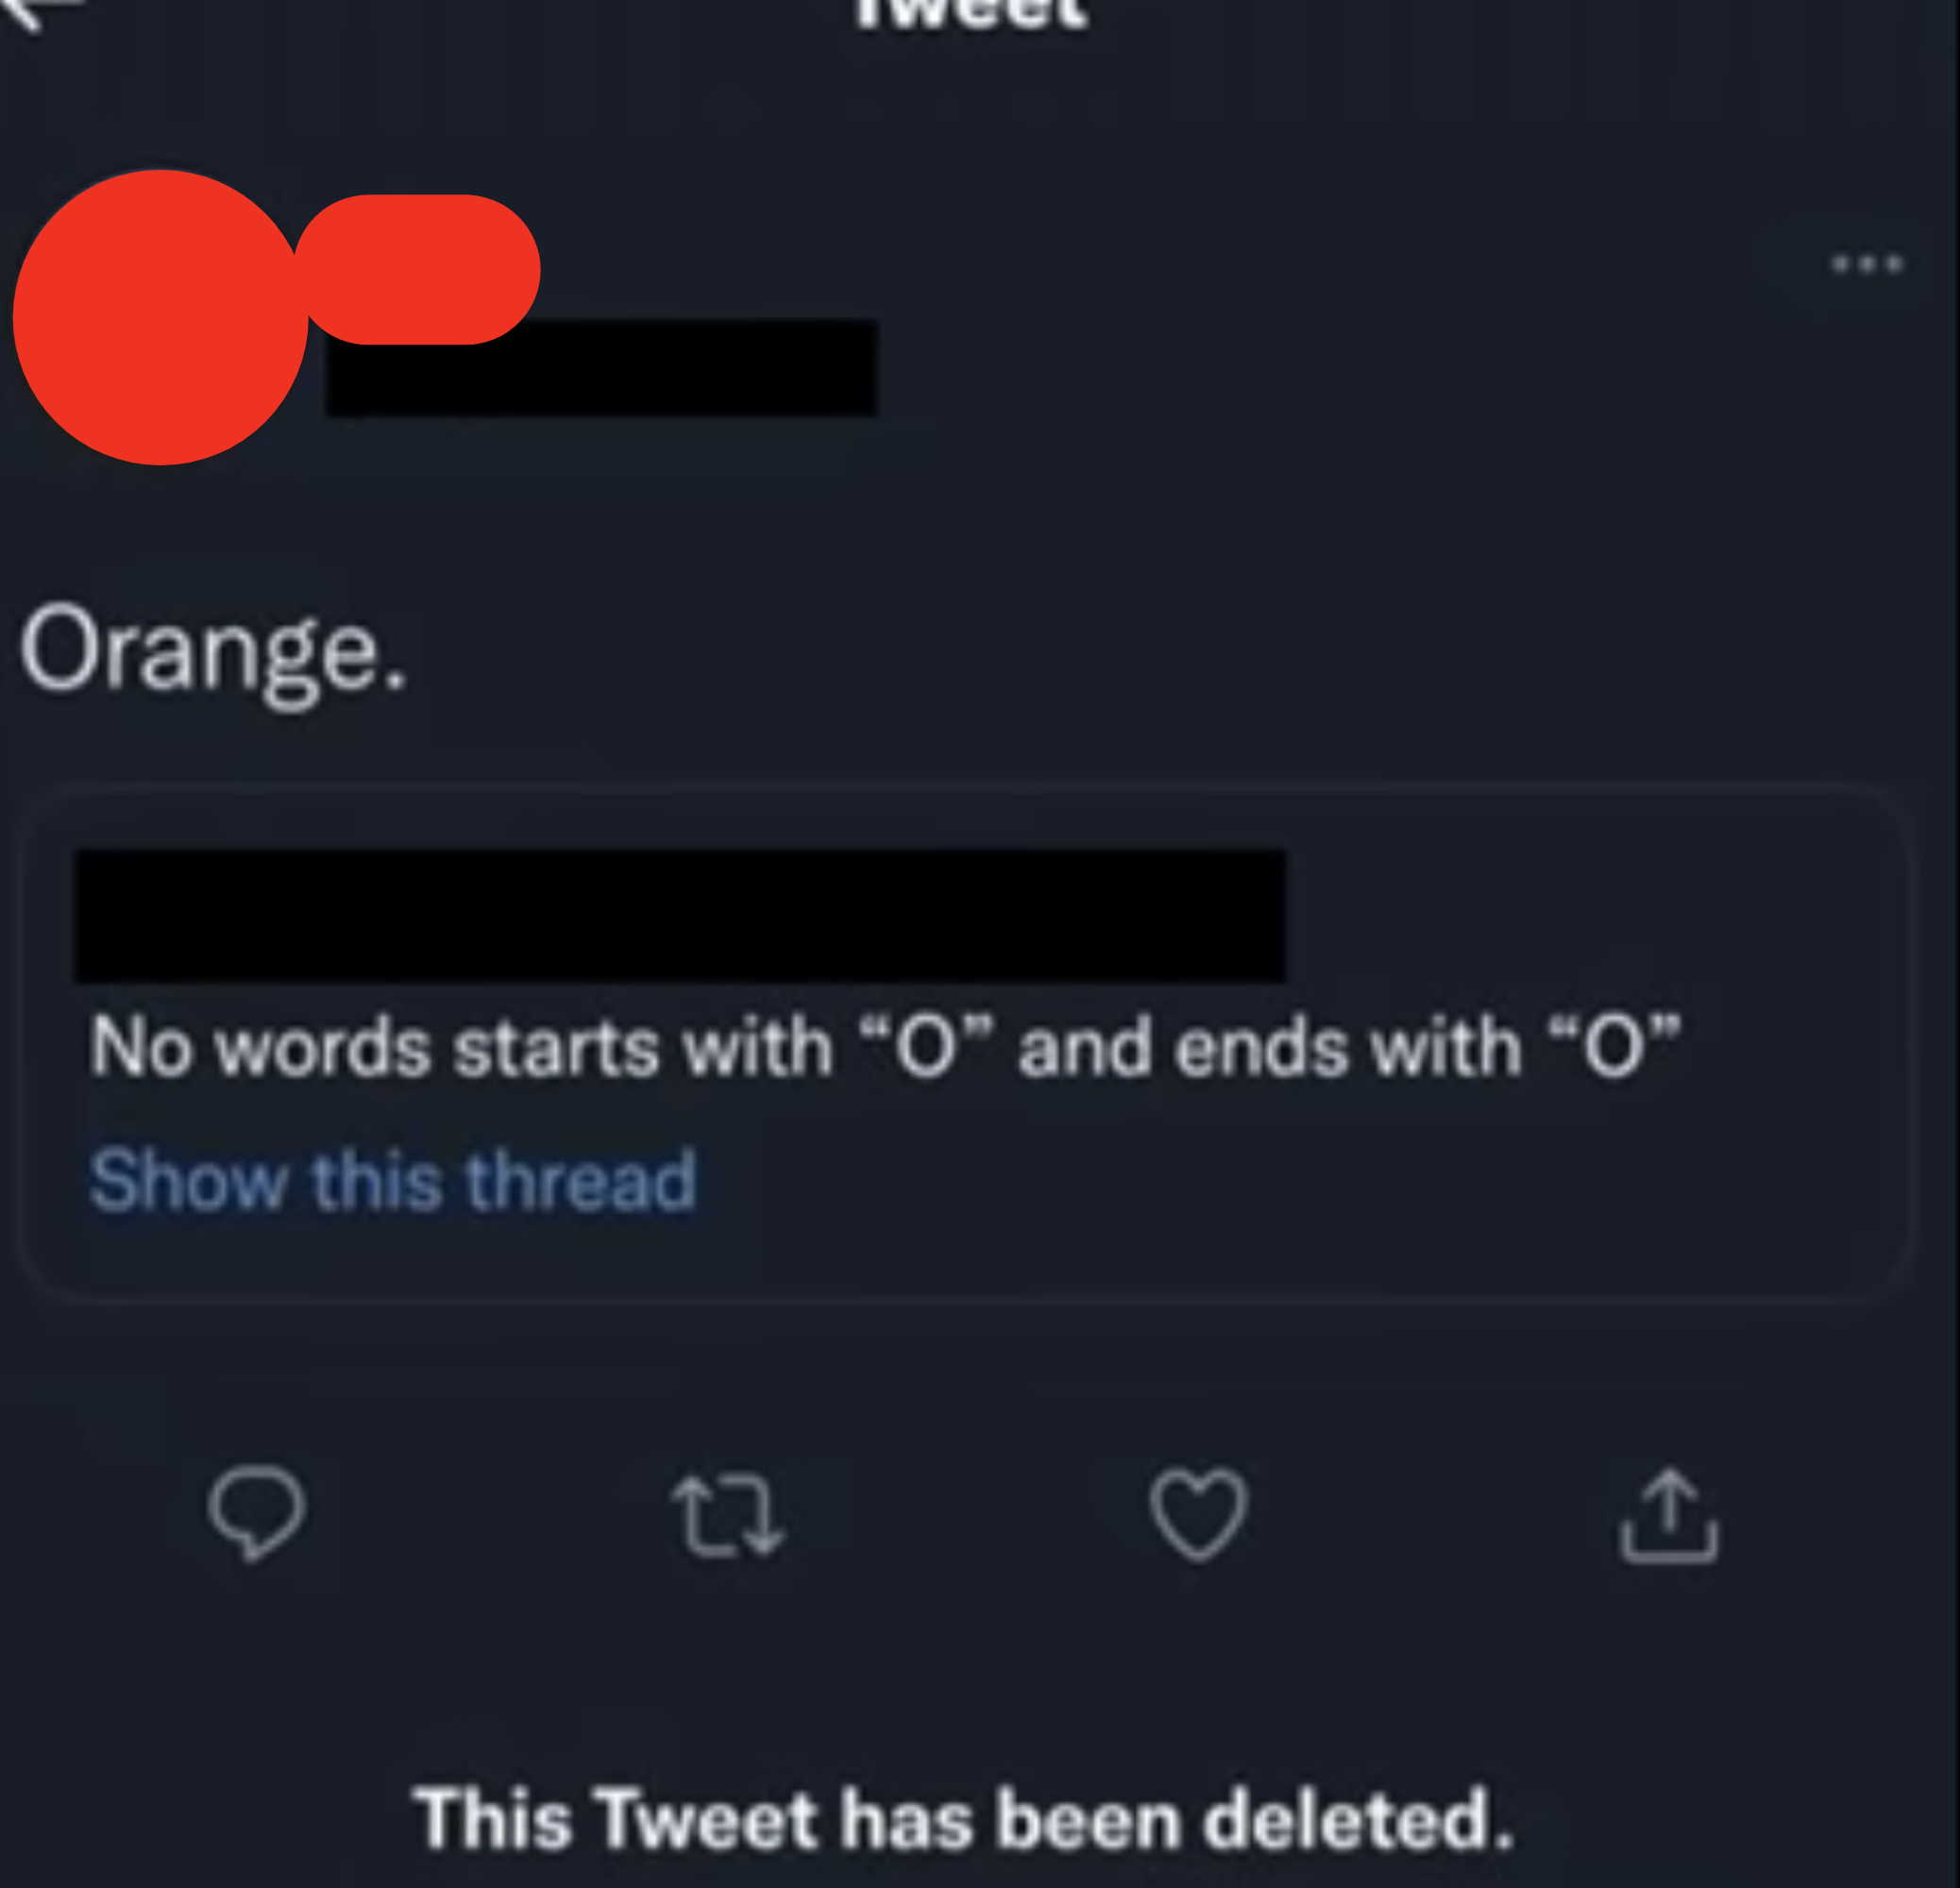 &quot;Orange.&quot;